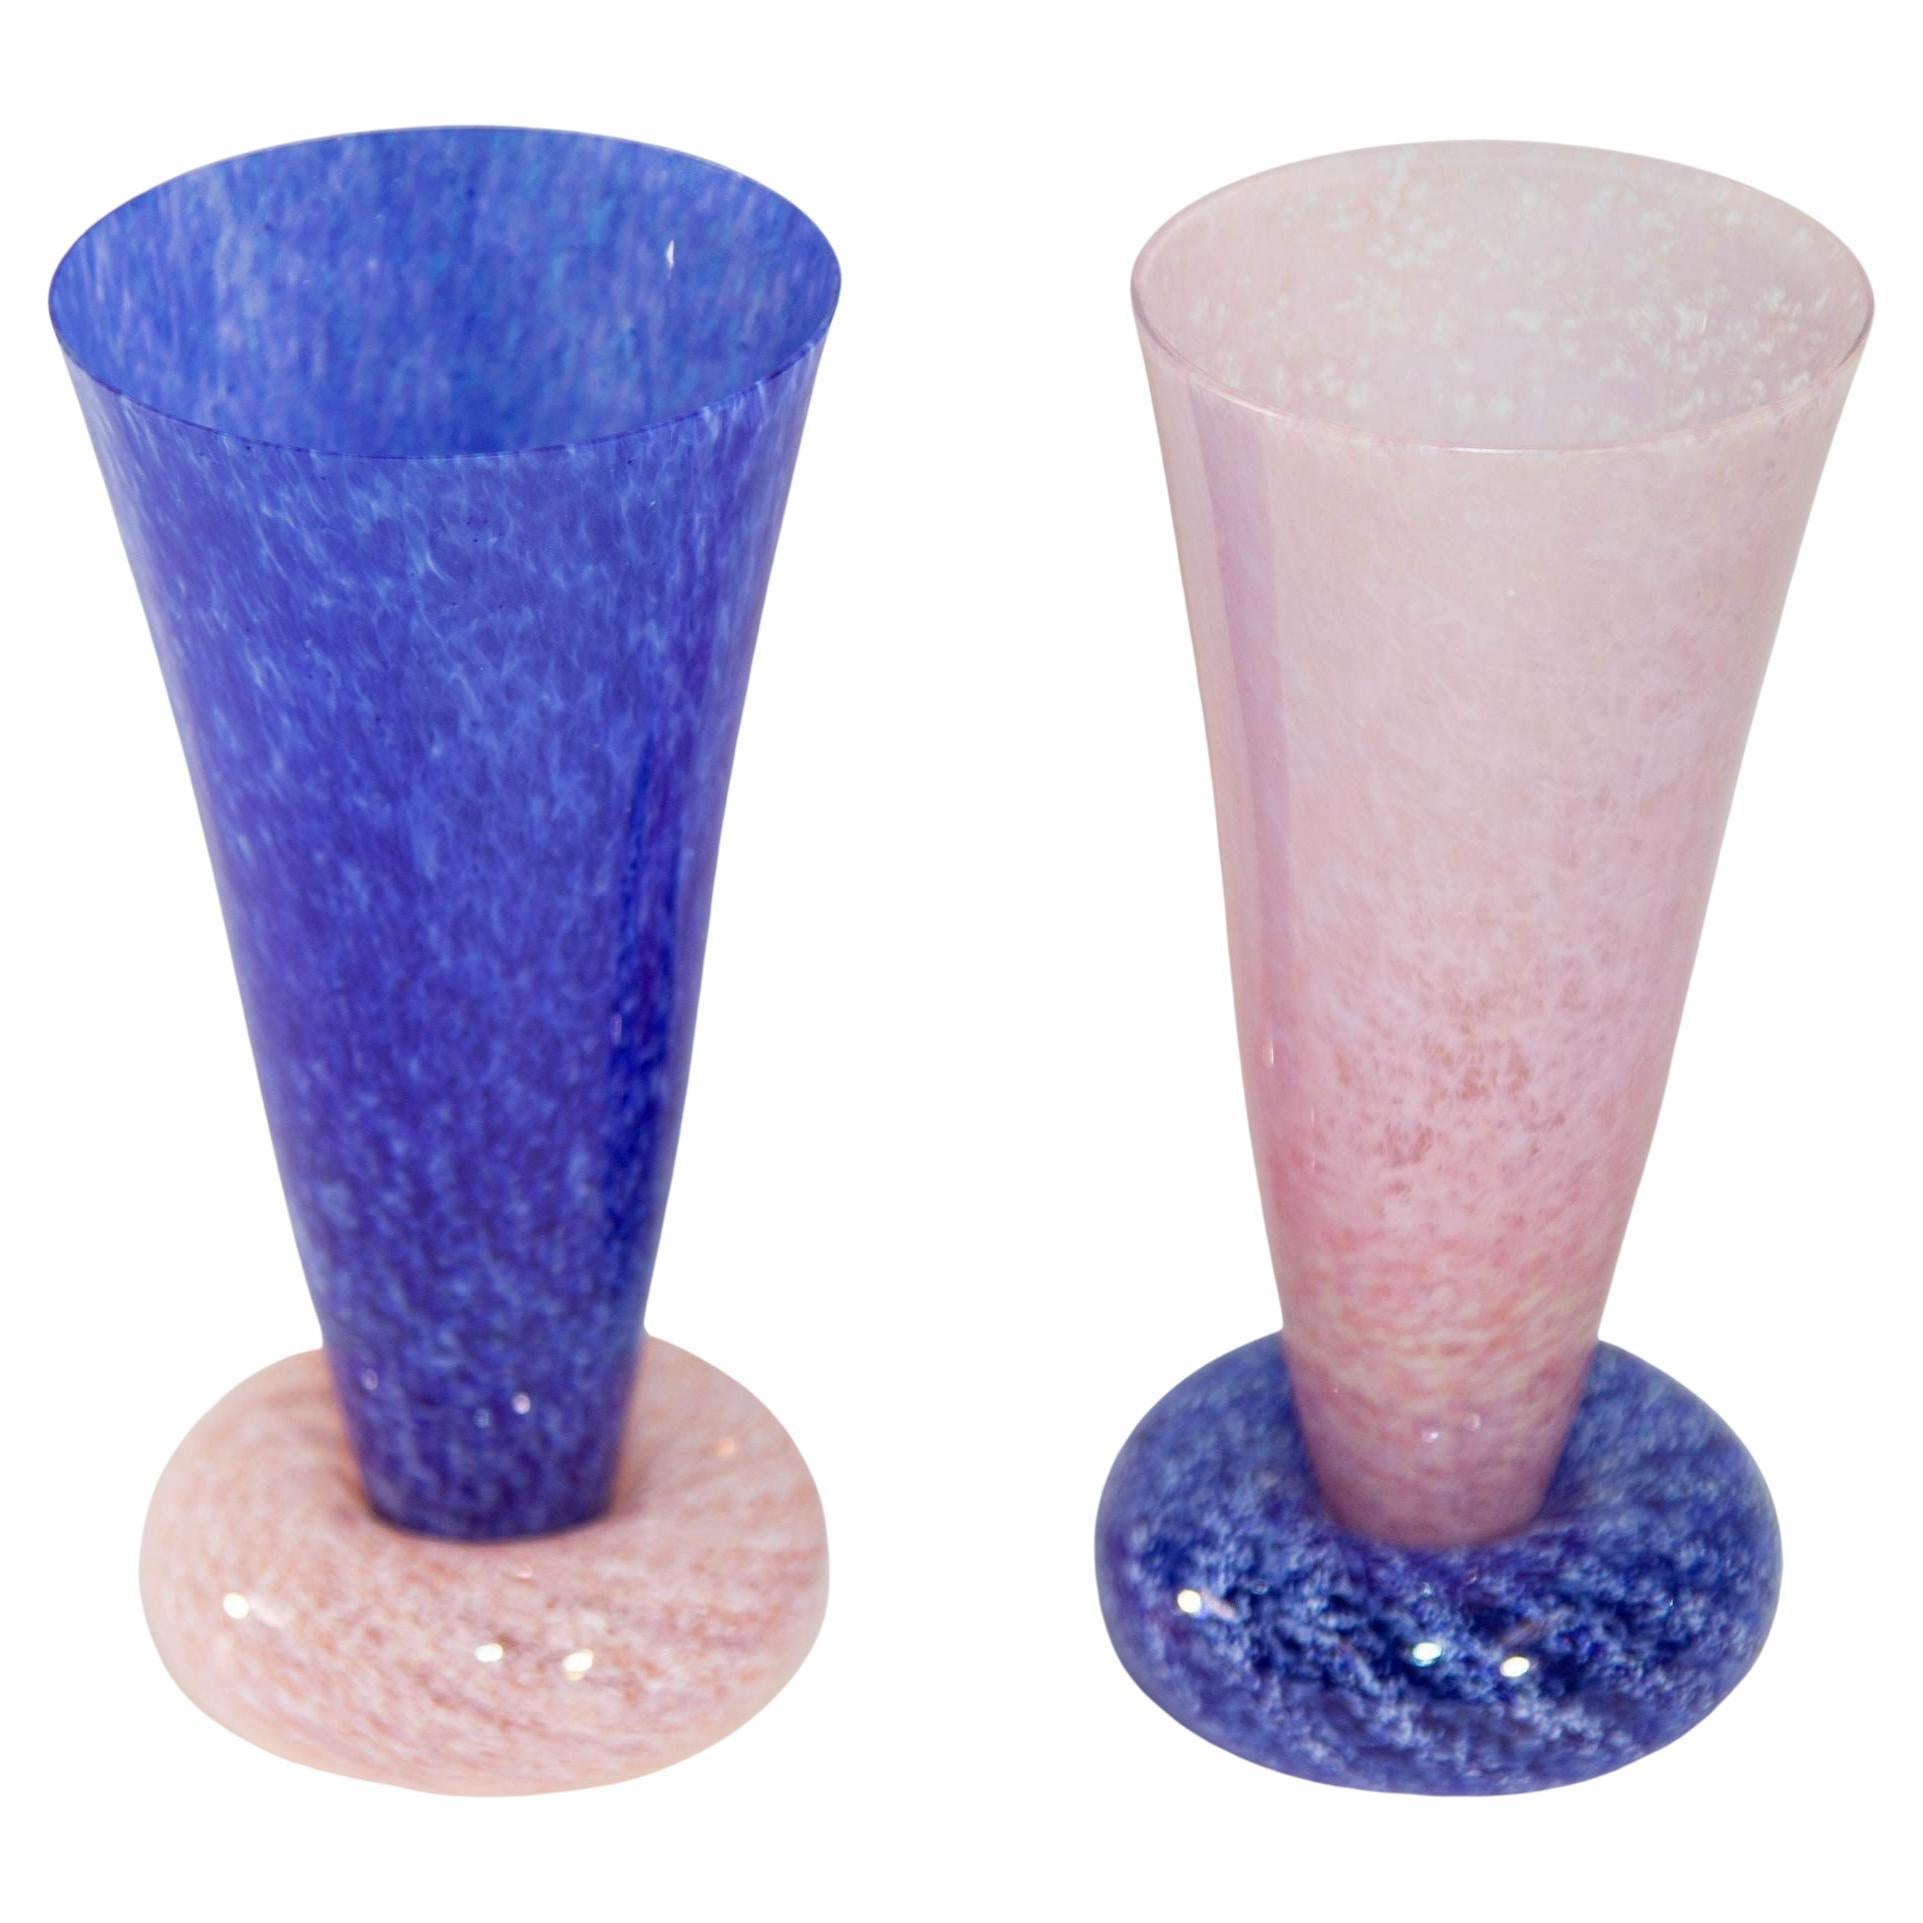 Guy Corrie Union Glas-Kunstglasvasen mit Nussbaumsockel in Kobaltblau und Rosa, 1980er Jahre